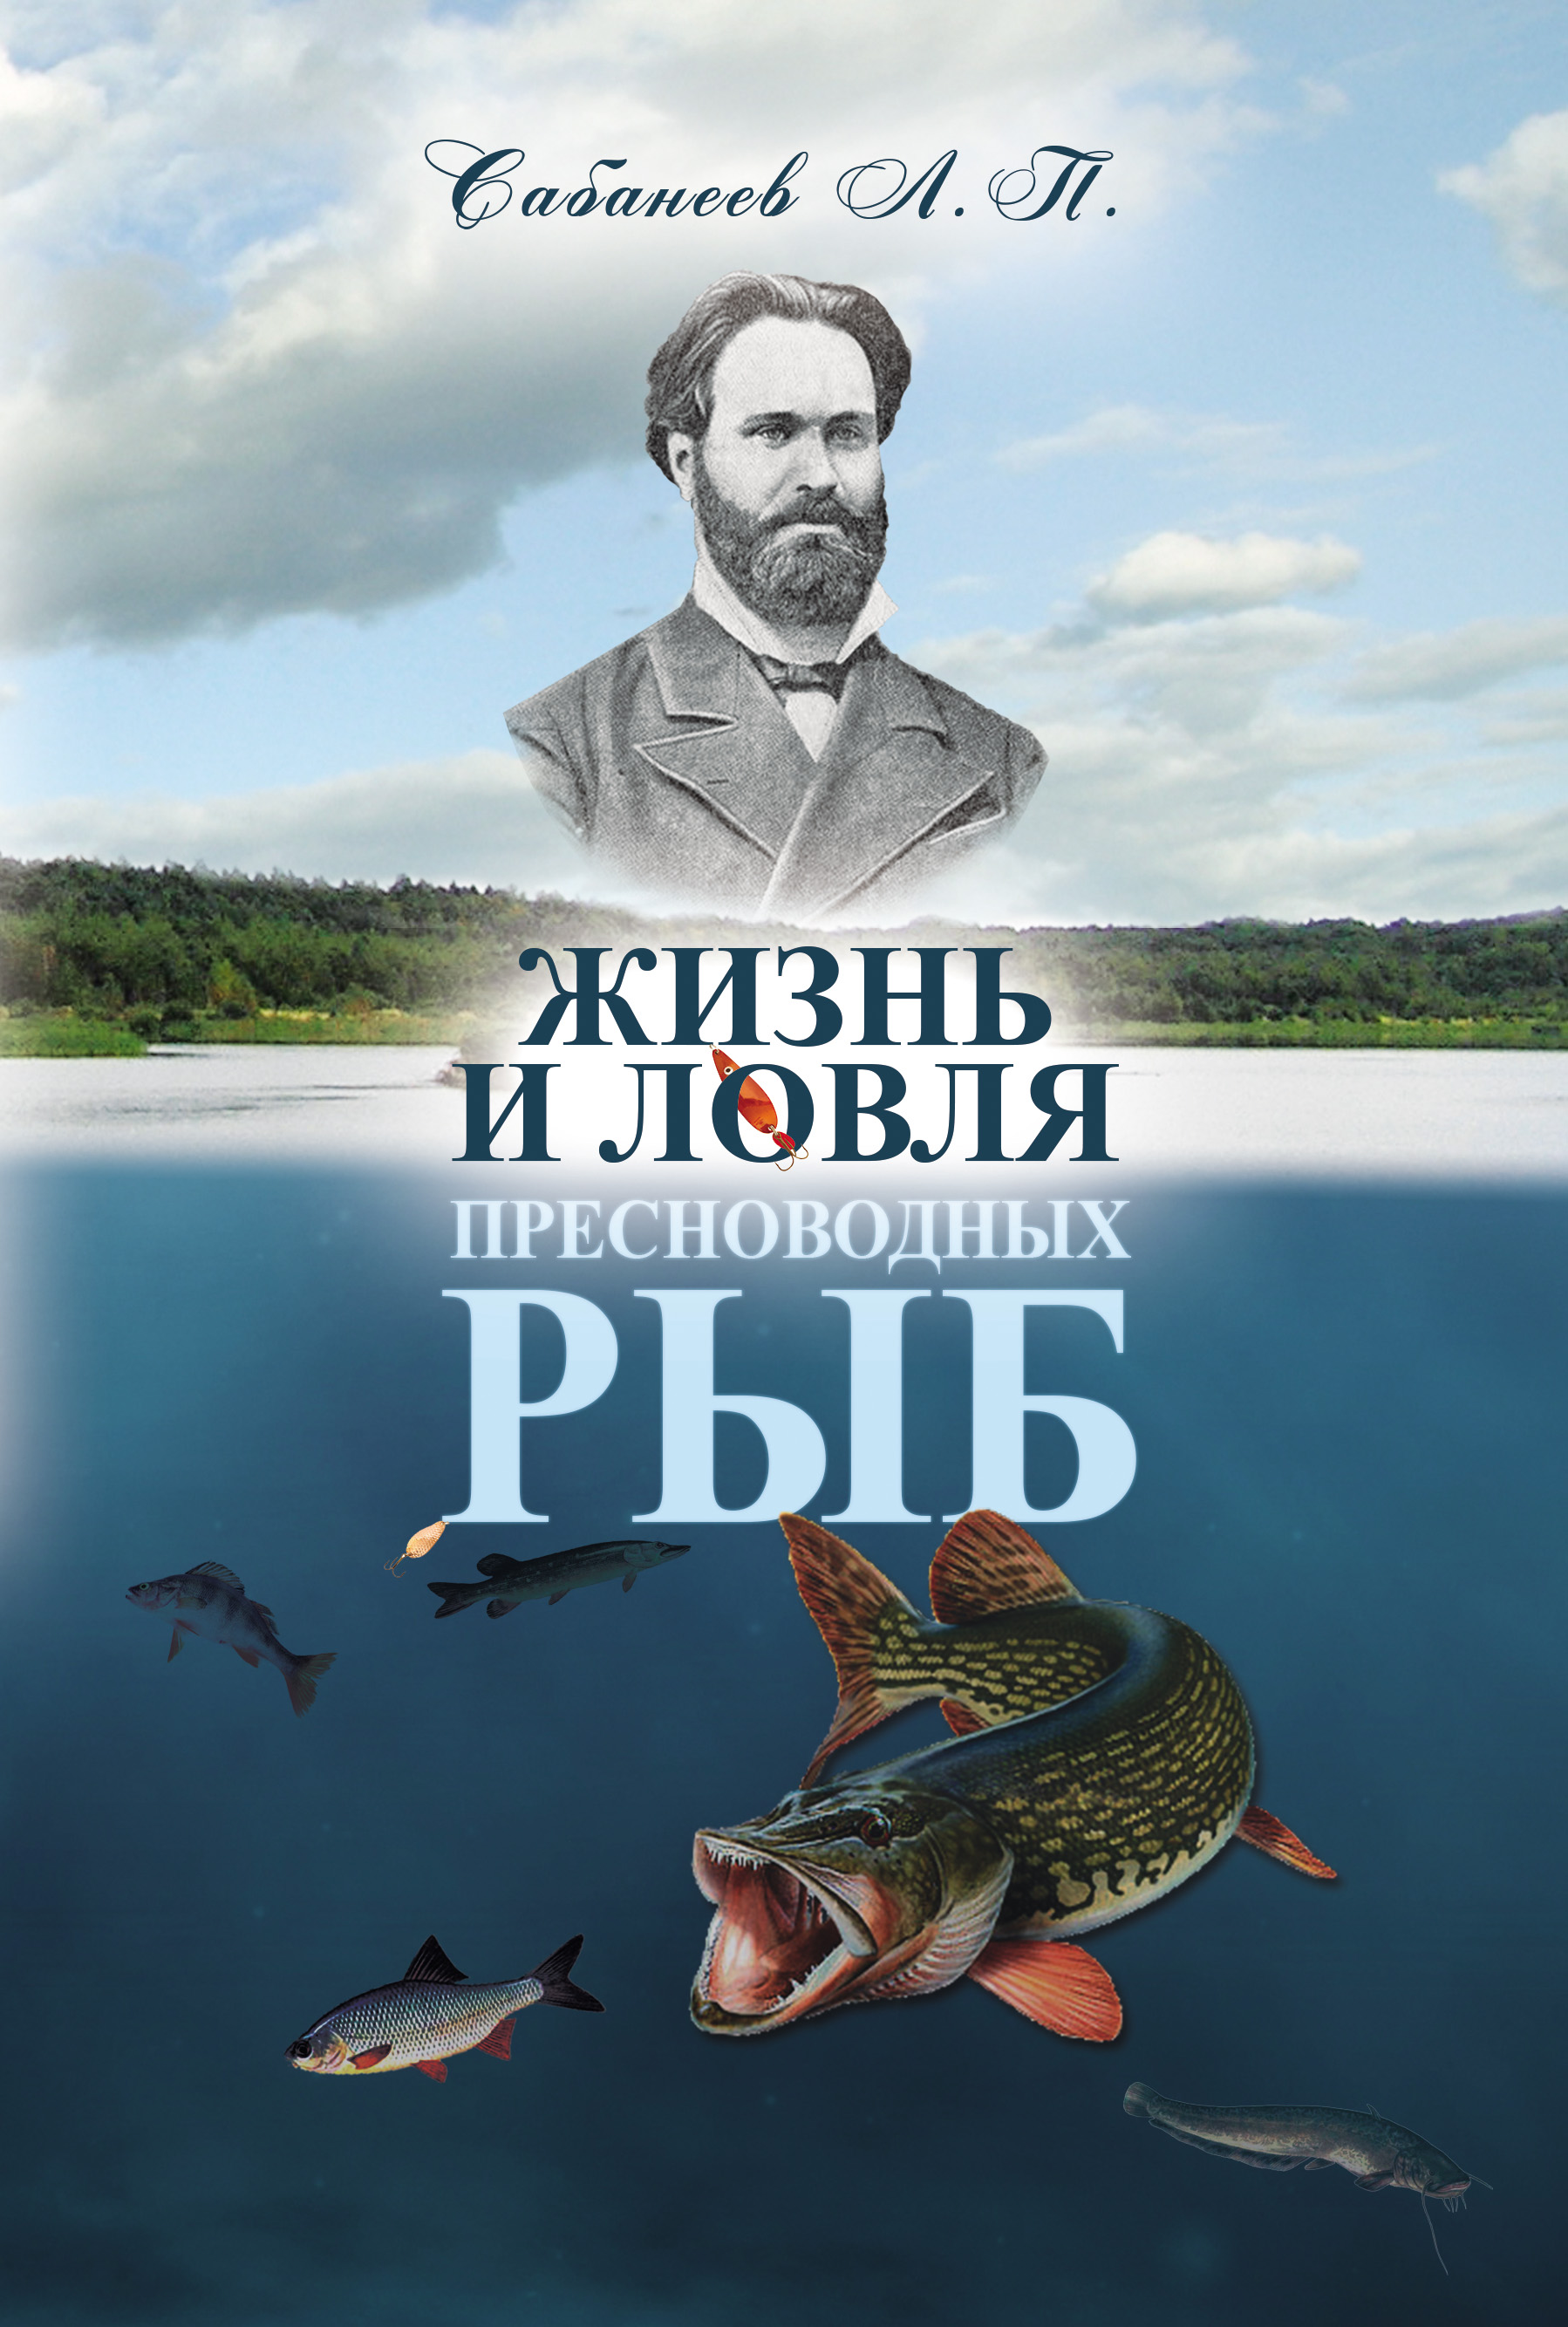 Книга Жизнь и ловля пресноводных рыб из серии , созданная Леонид Сабанеев, может относится к жанру Природа и животные, Хобби, Ремесла. Стоимость электронной книги Жизнь и ловля пресноводных рыб с идентификатором 17046853 составляет 149.00 руб.